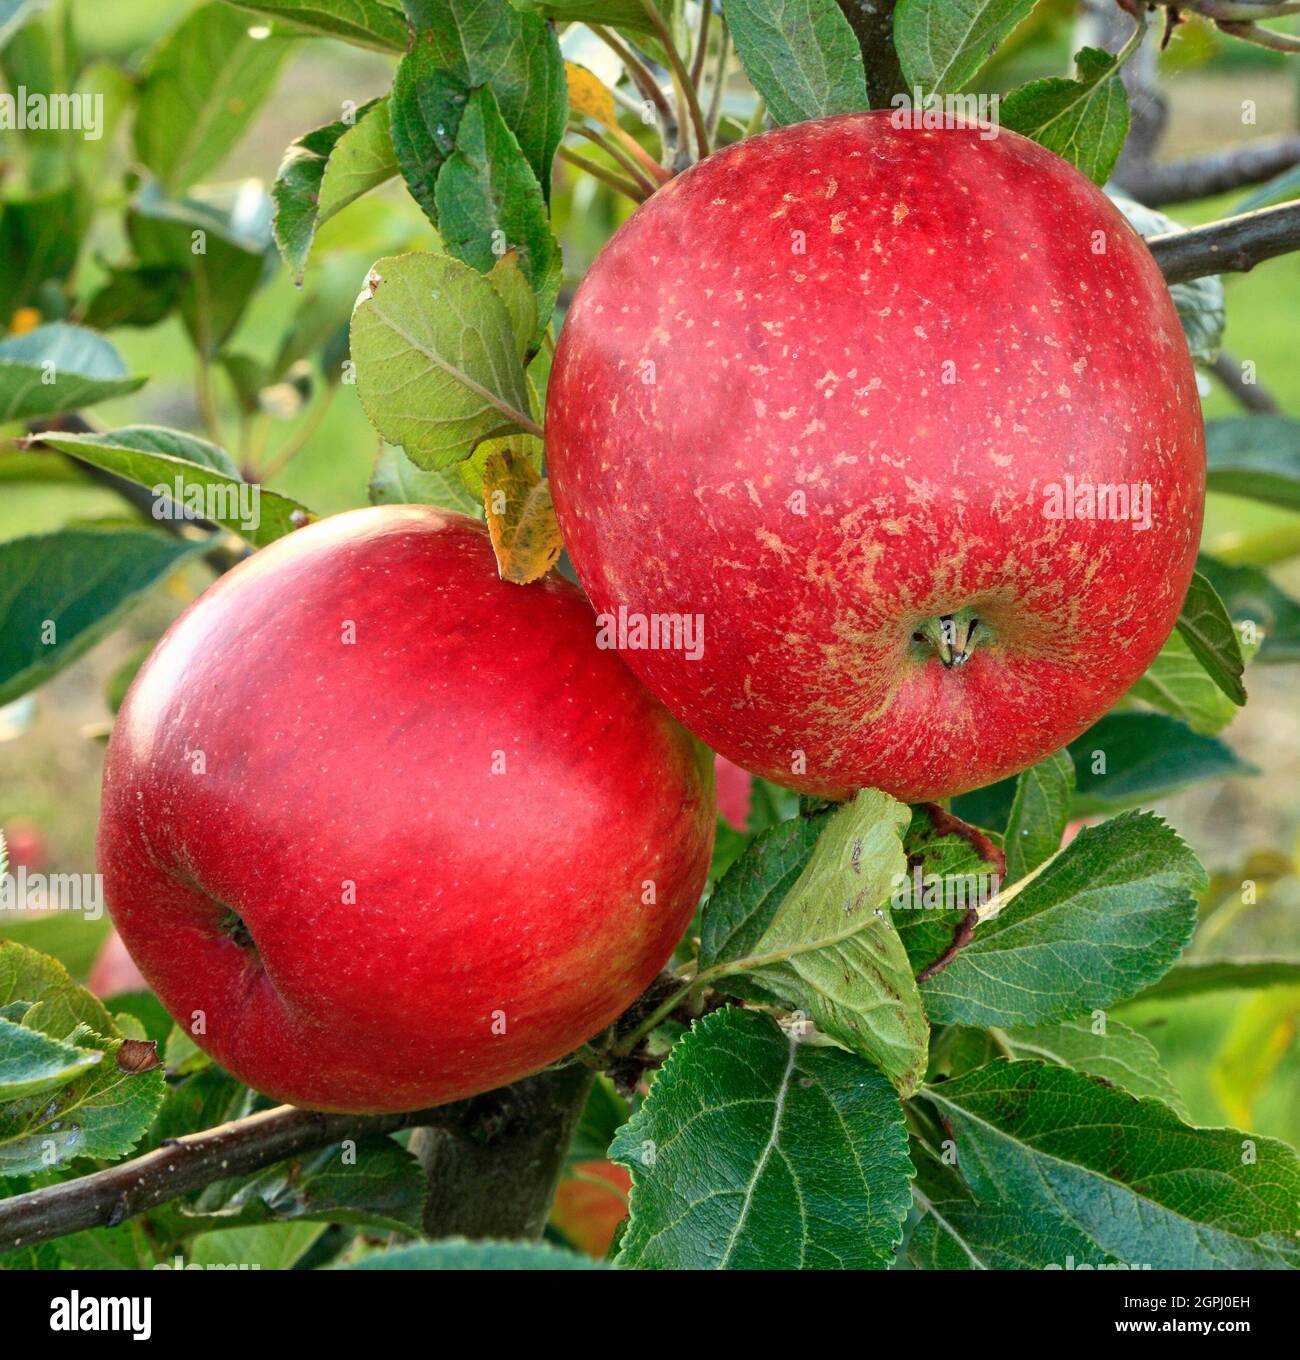 Apfel 'Clopton Red', wächst auf Baum, Äpfel, Malus domestica, gesunde Ernährung Stockfoto